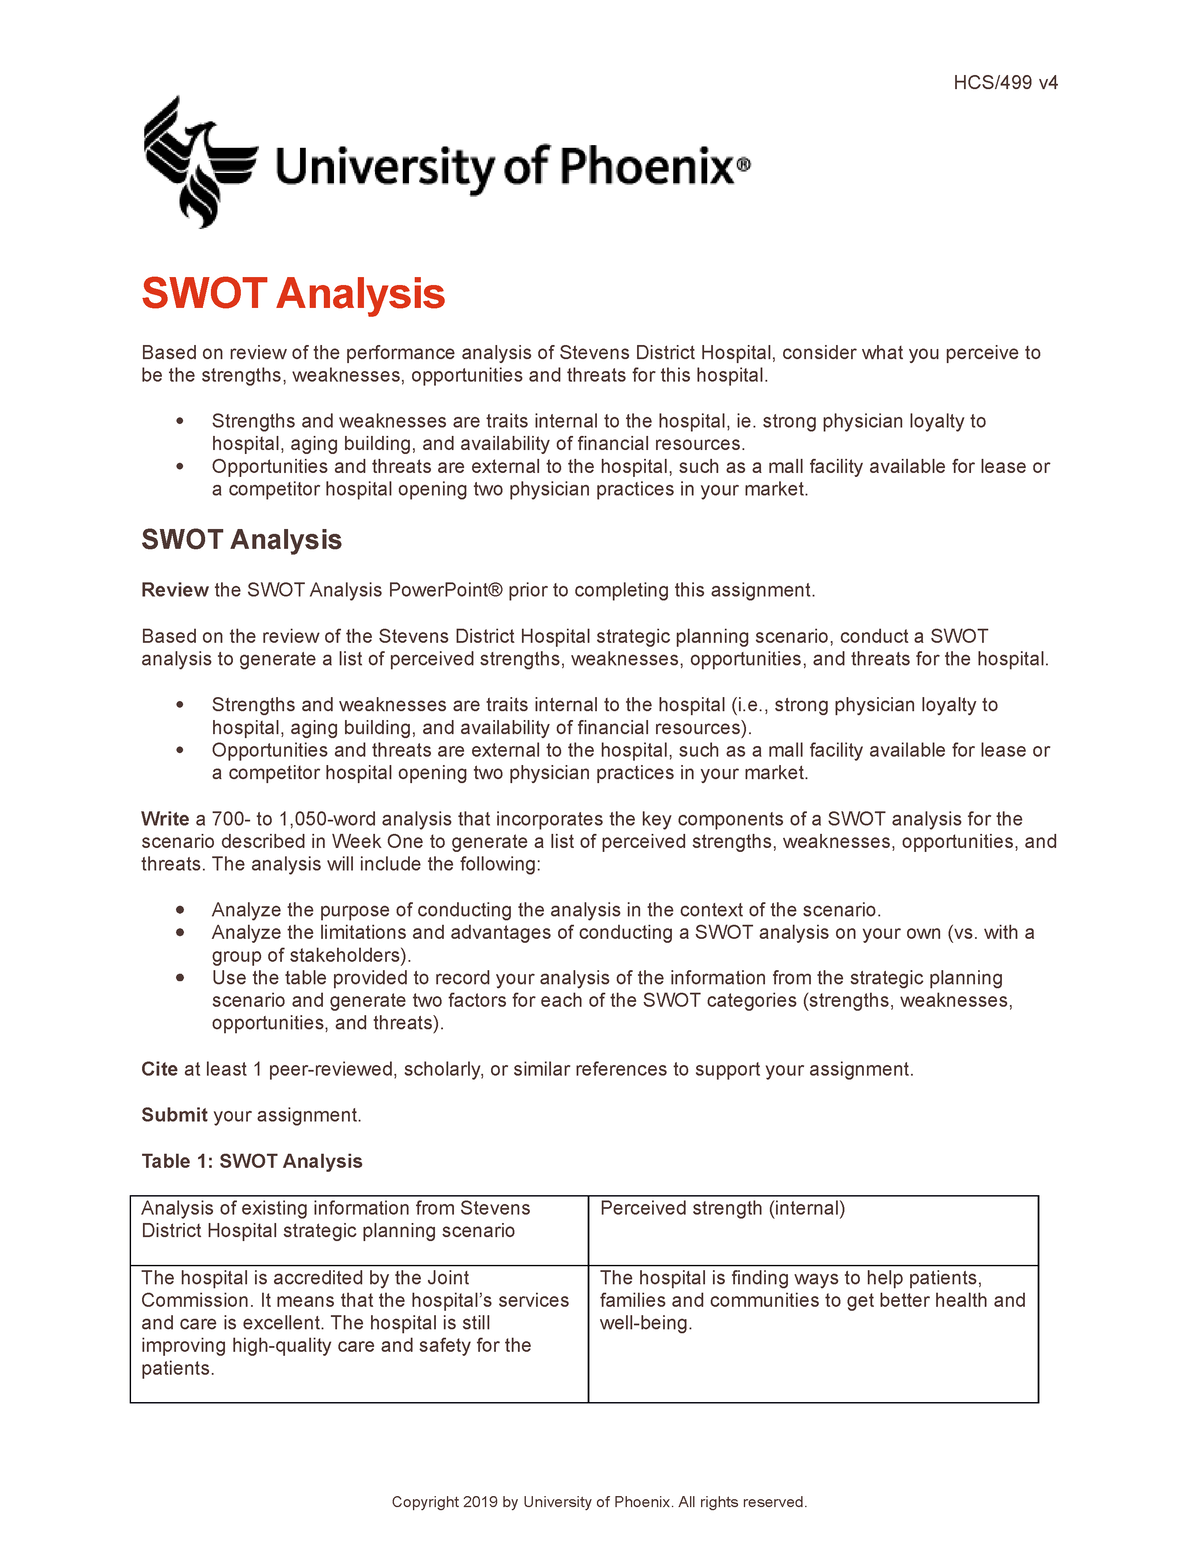 Hermès SWOT Analysis - Key Points & Overview